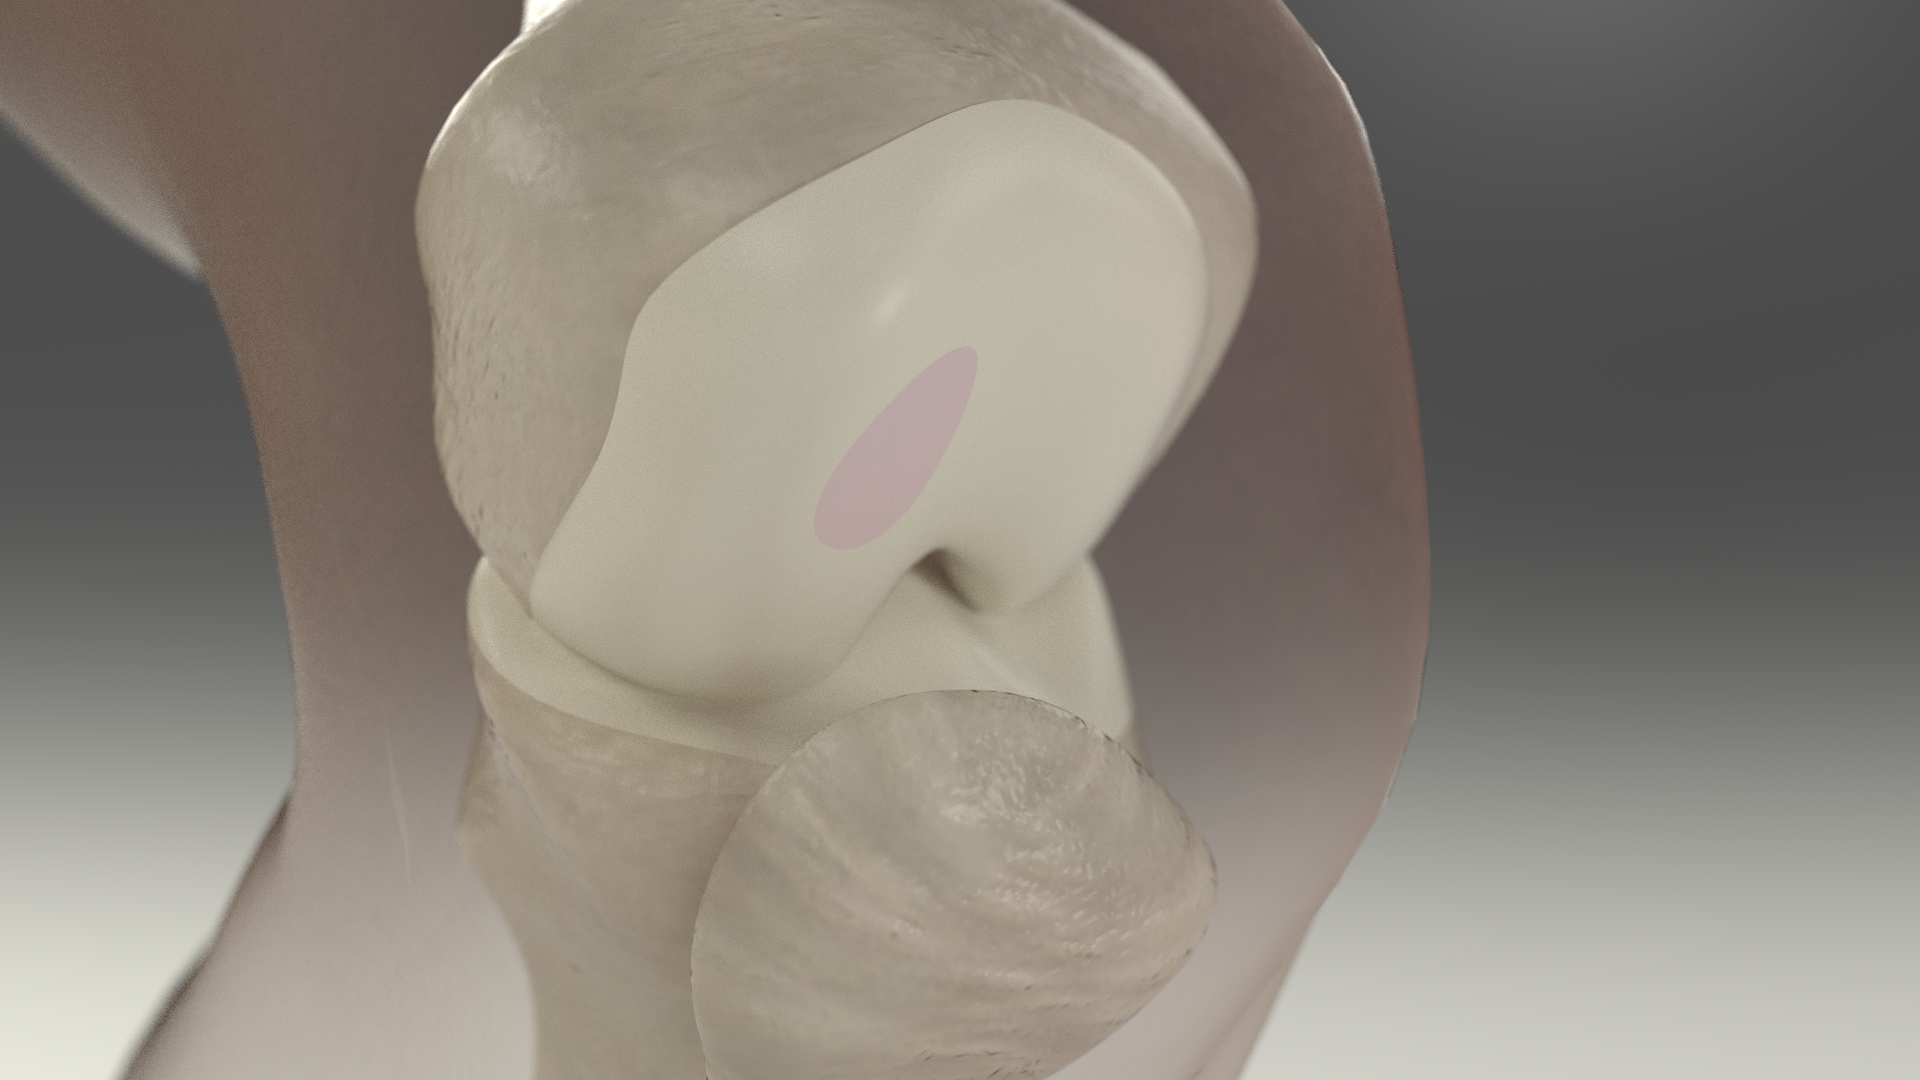 Regrow cartilage in  your knee